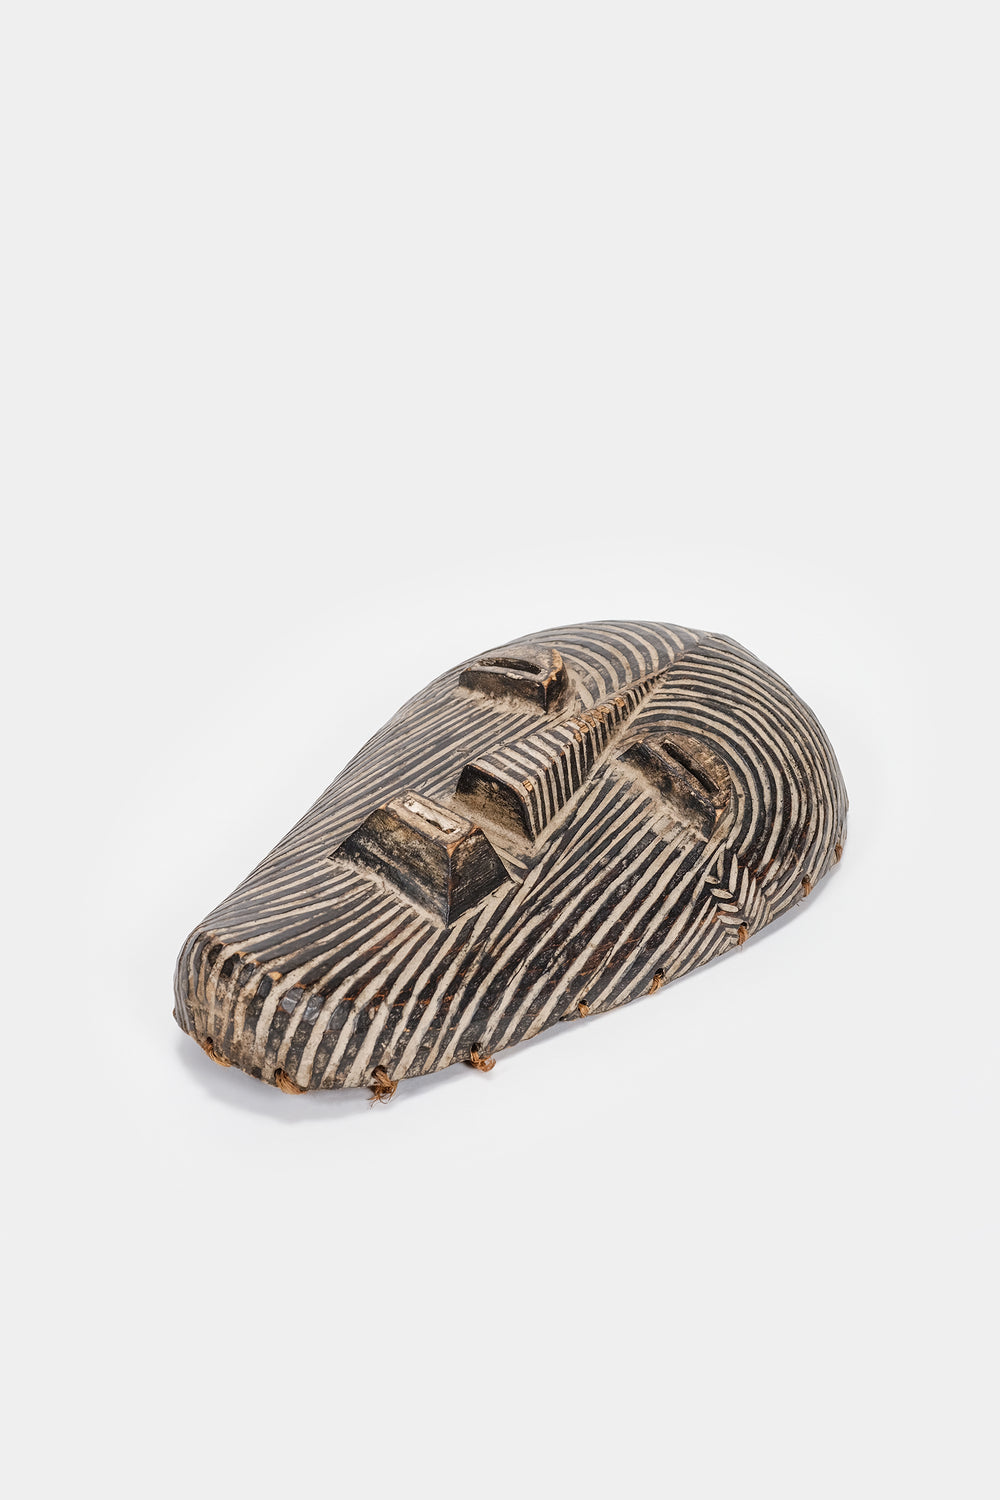 Kifwebe wood mask of Luba the culture, 30s